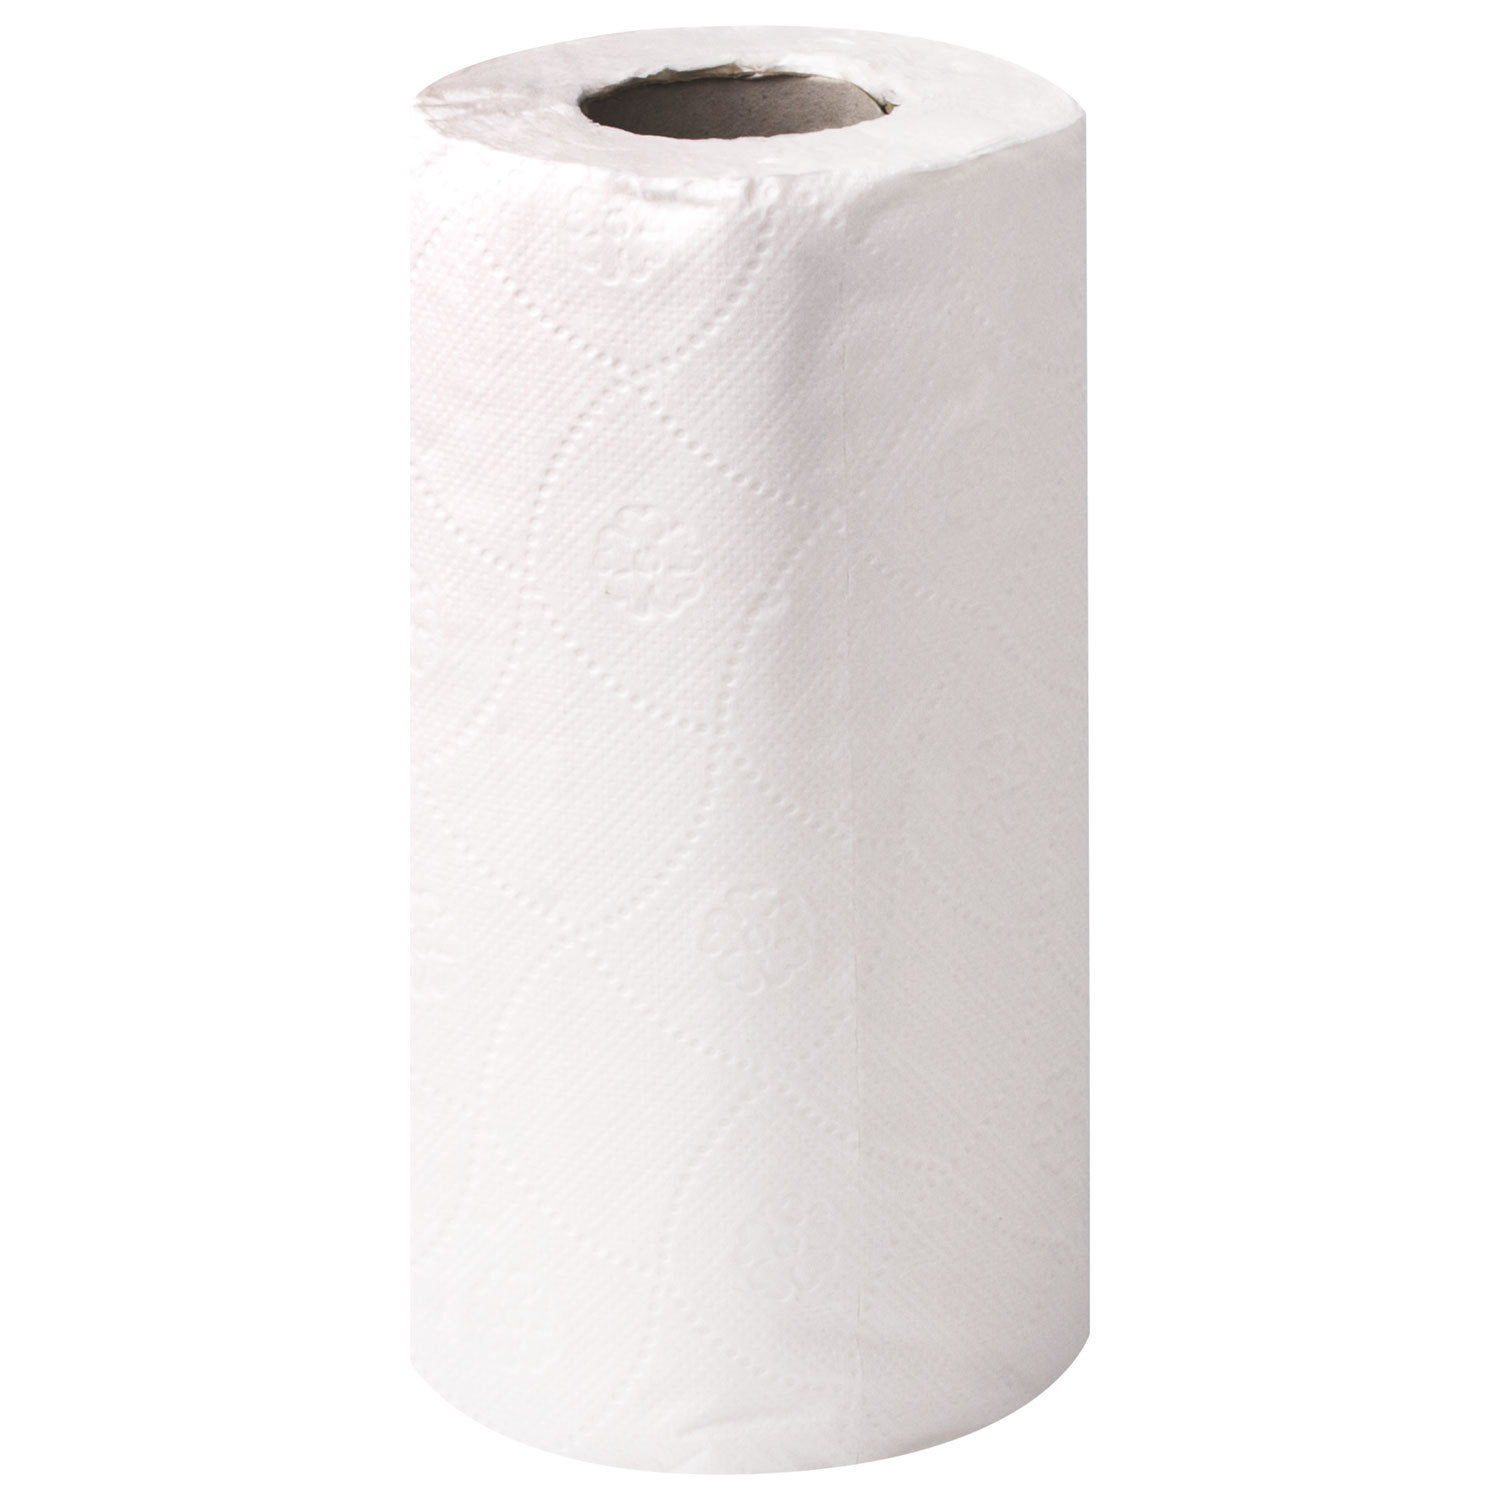 Полотенца бытовые. Бумажное полотенце белое ТЕРРАЛАЙН 2шт, 2сл, 18м. Полотенце в рулоне 2-сл Lotti белое 100% Целлюлоза (2рул/упак) (12упак/пак).